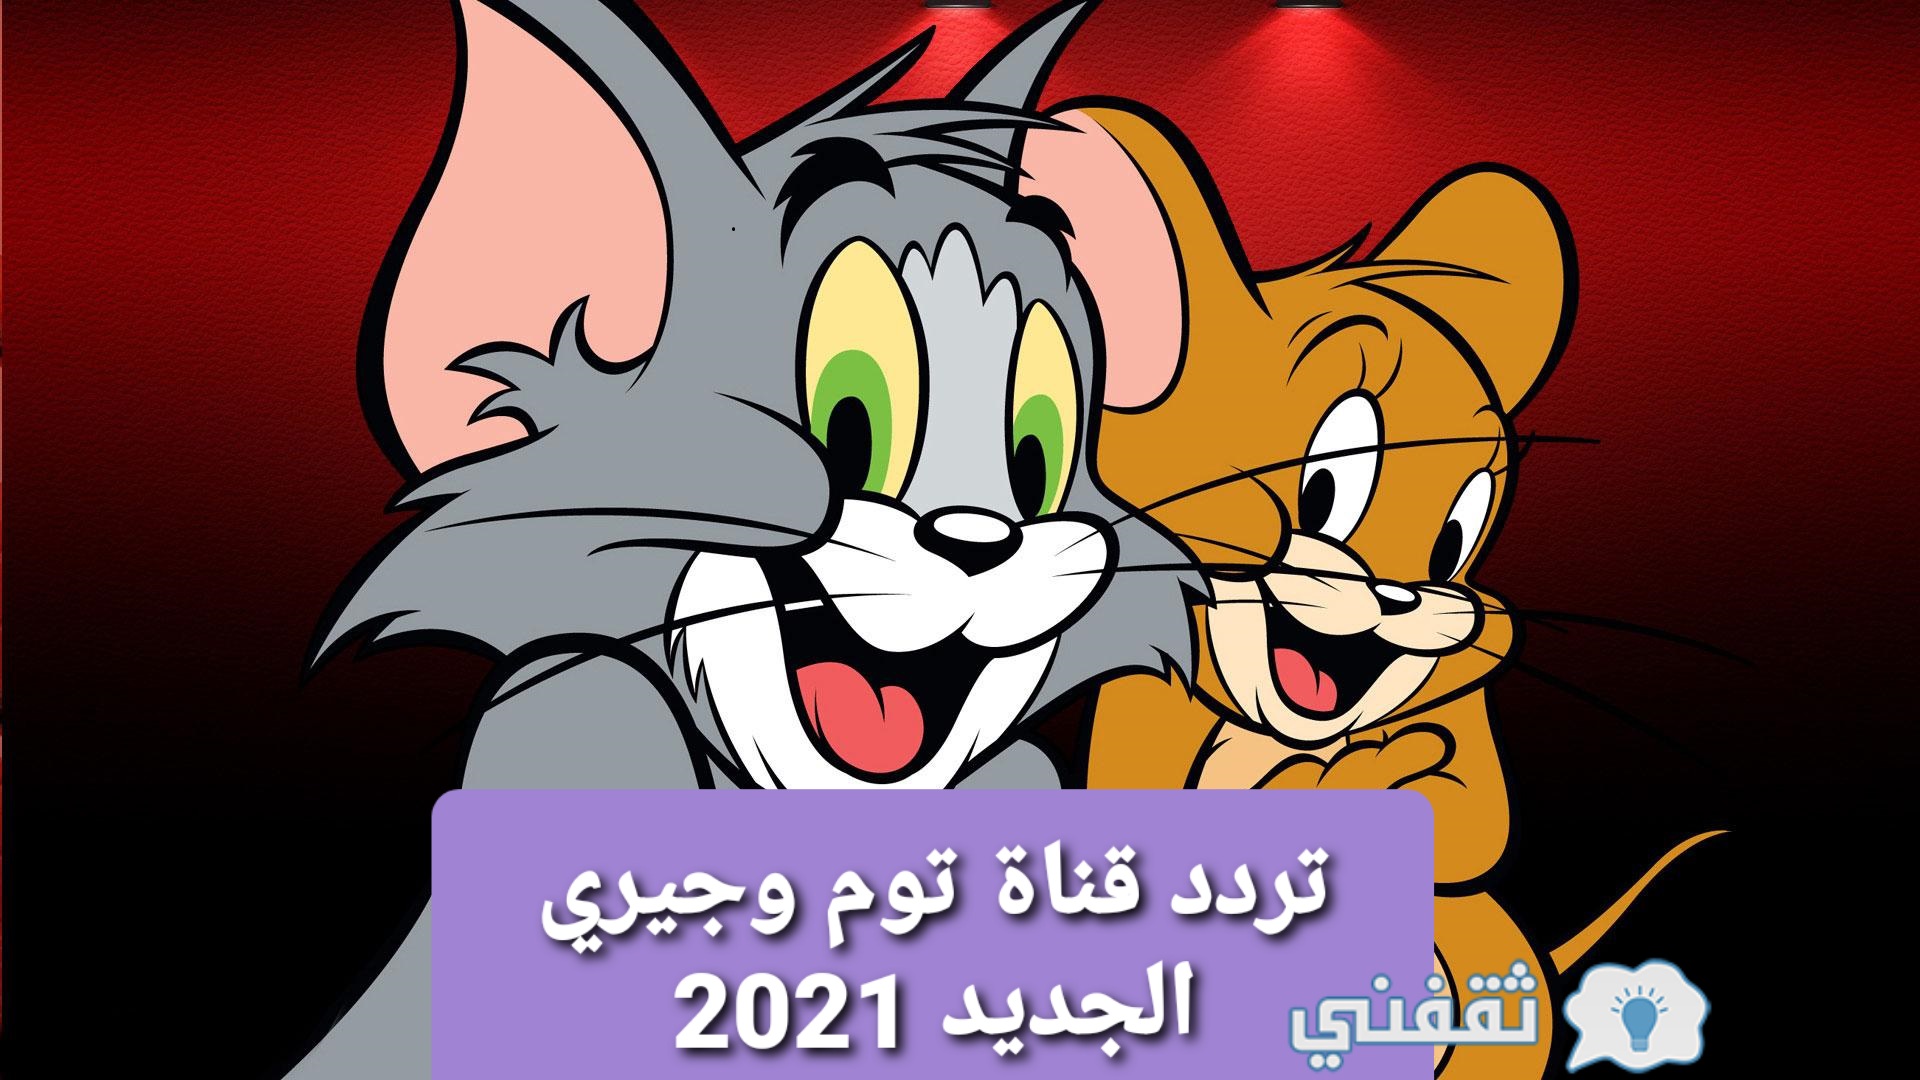 تردد قناة توم وجيري الجديد 2021 Tom and Jerry new channel